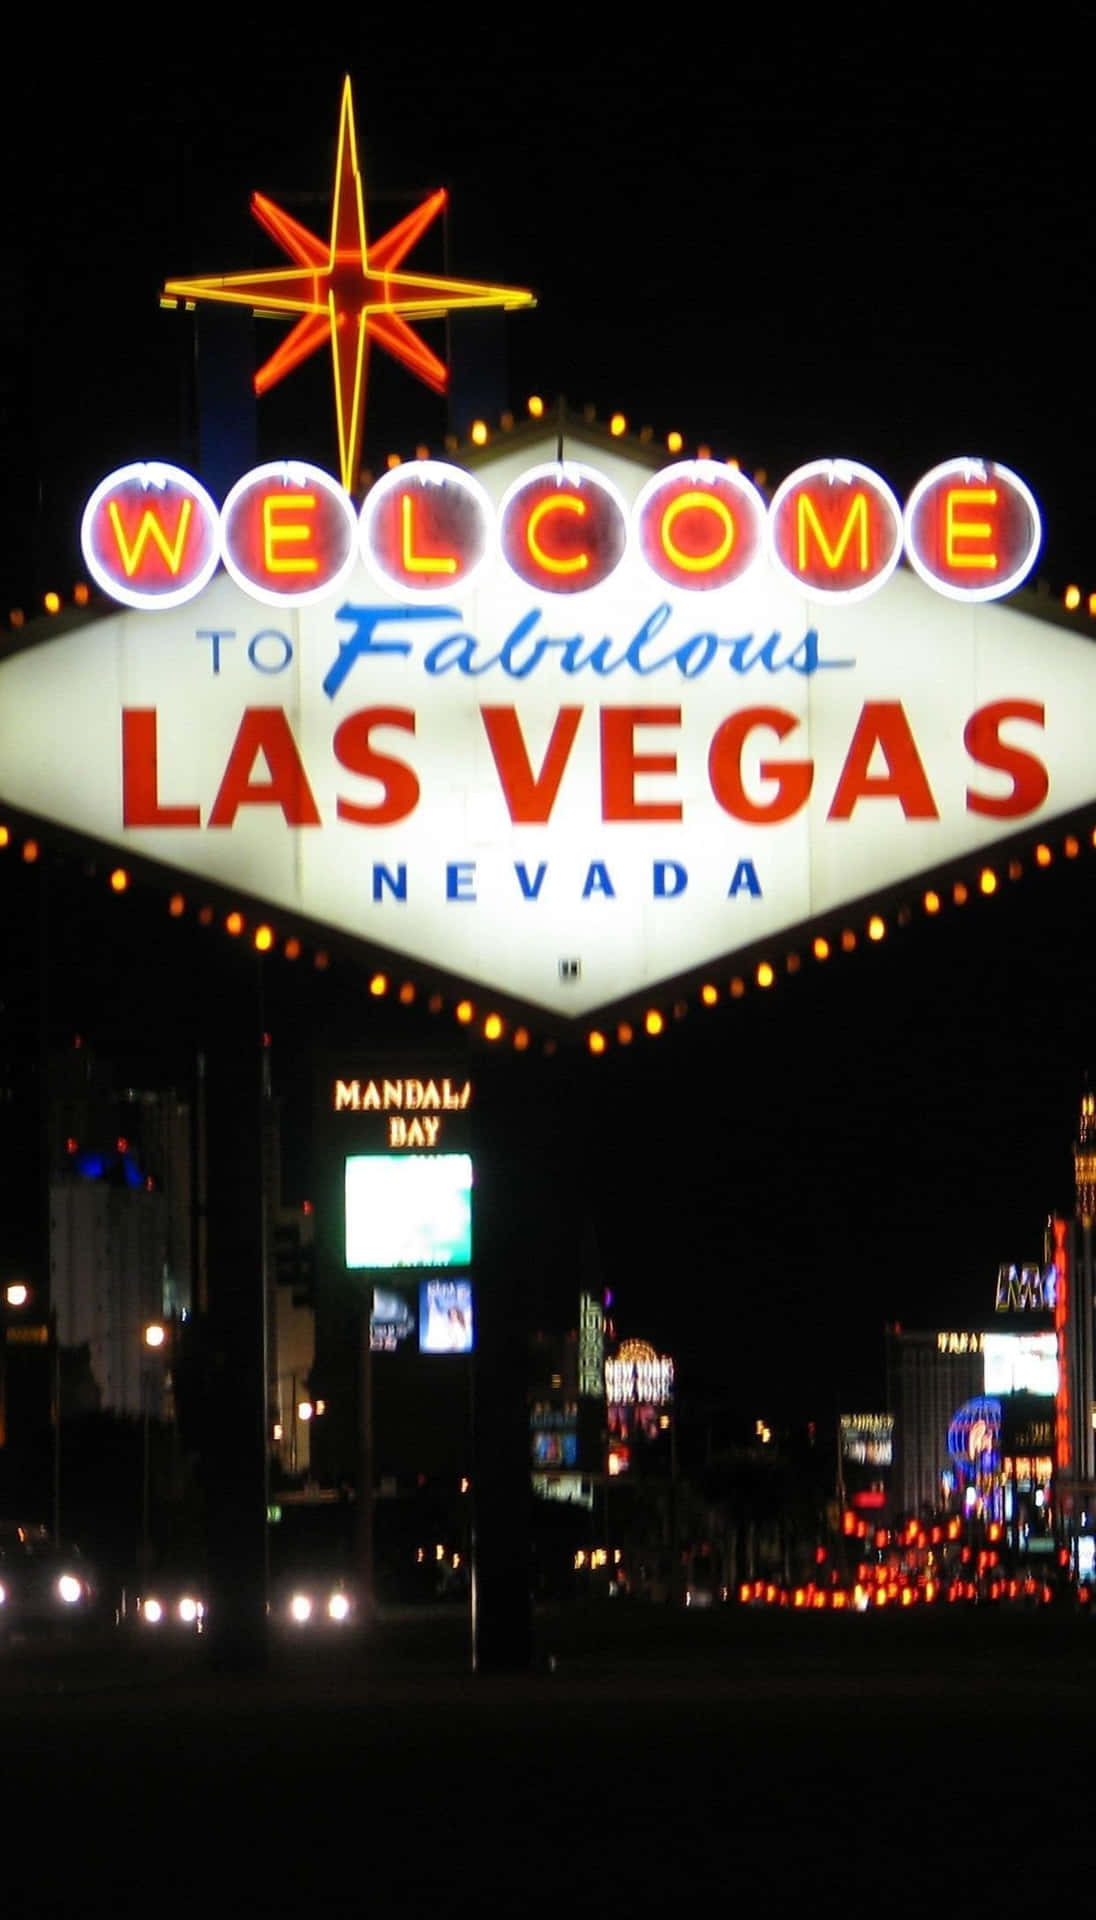 Las Vegas Background Signage